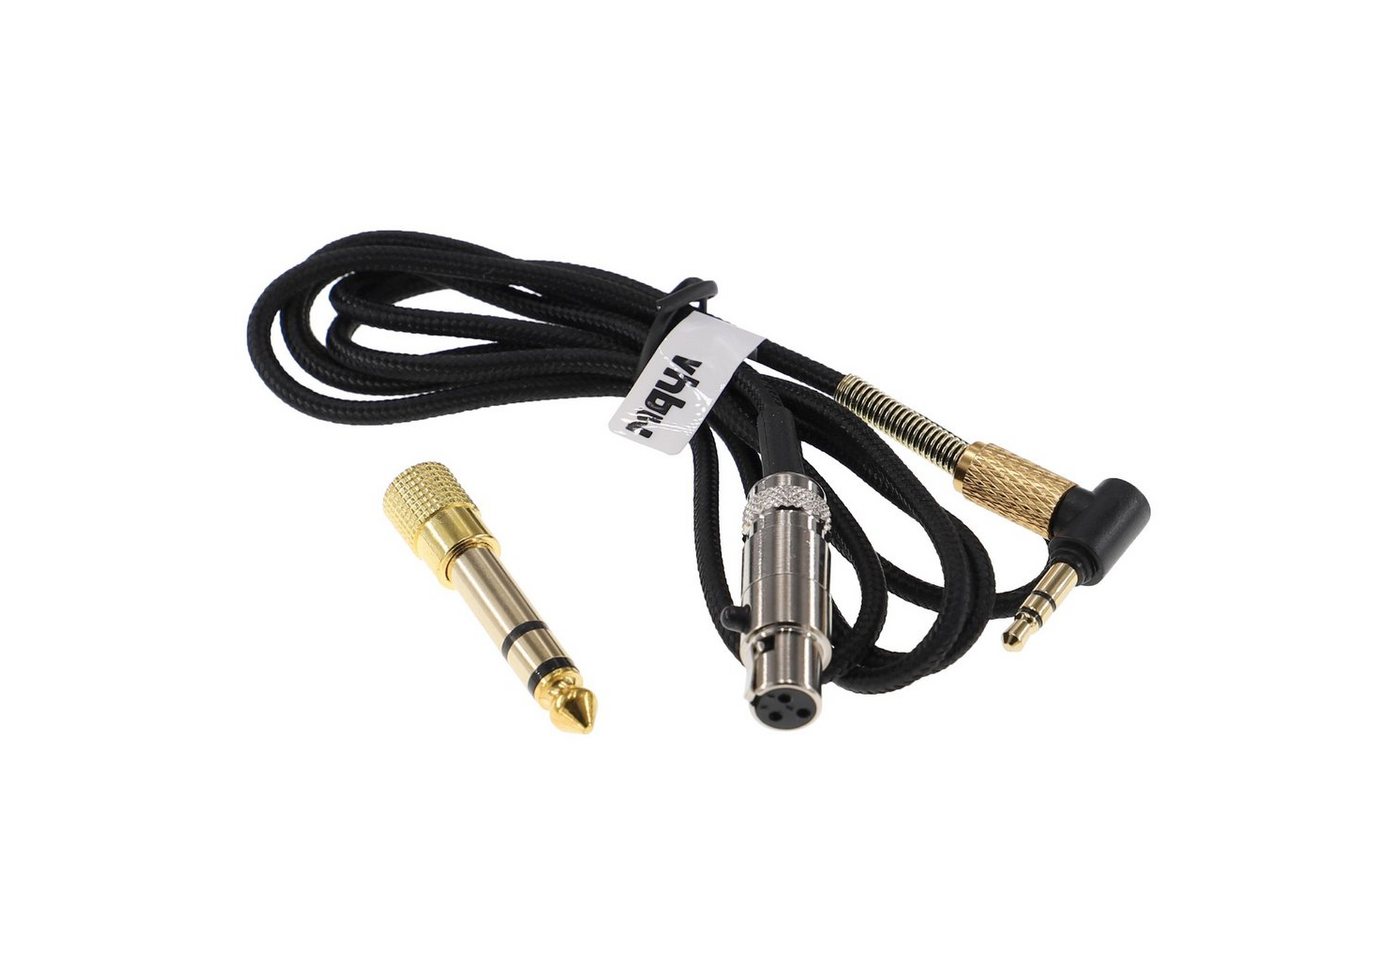 vhbw passend für AKG K702, Q701, K712, K701 Kopfhörer Audio-Kabel von vhbw